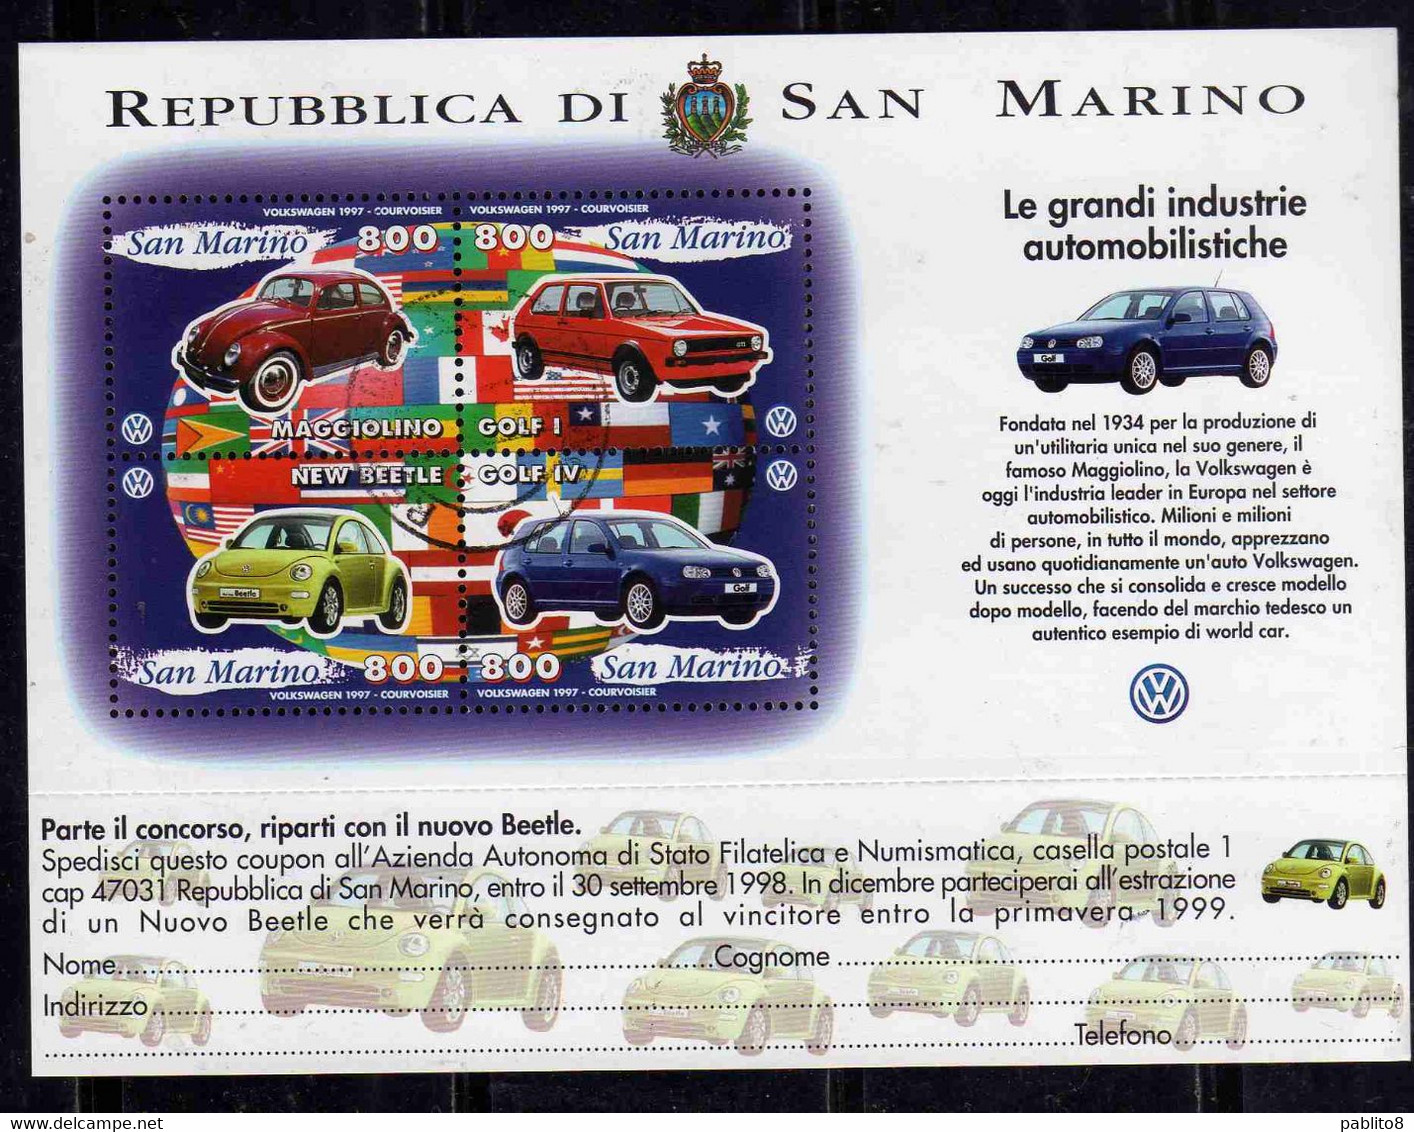 REPUBBLICA DI SAN MARINO 1997 LE GRANDI INDUSTRIE AUTOMOBILISTICHE VOLKSWAGEN BLOCCO FOGLIETTO BLOCK SHEET USATO USED - Usados